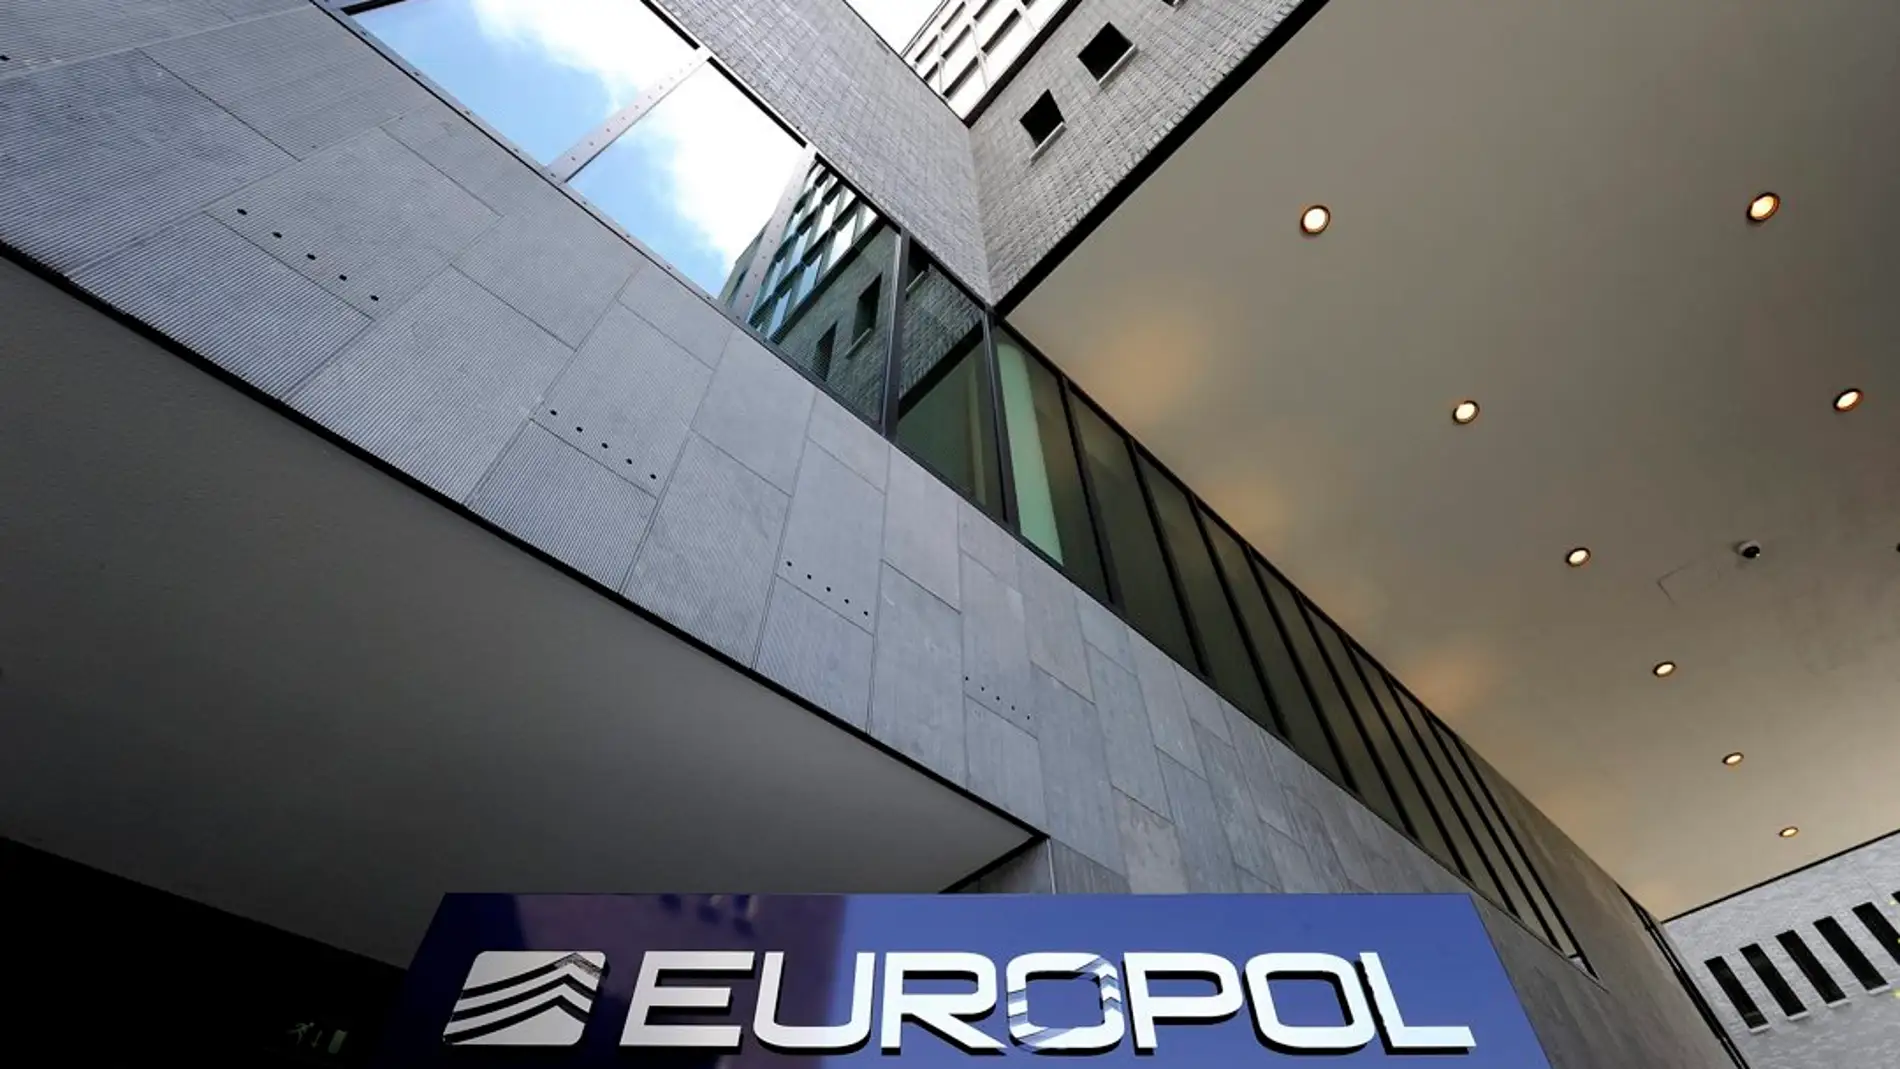 Vista exterior parcial de la sede de la Europol, en La Haya, Holanda./ EFE/Lex van Lieshout